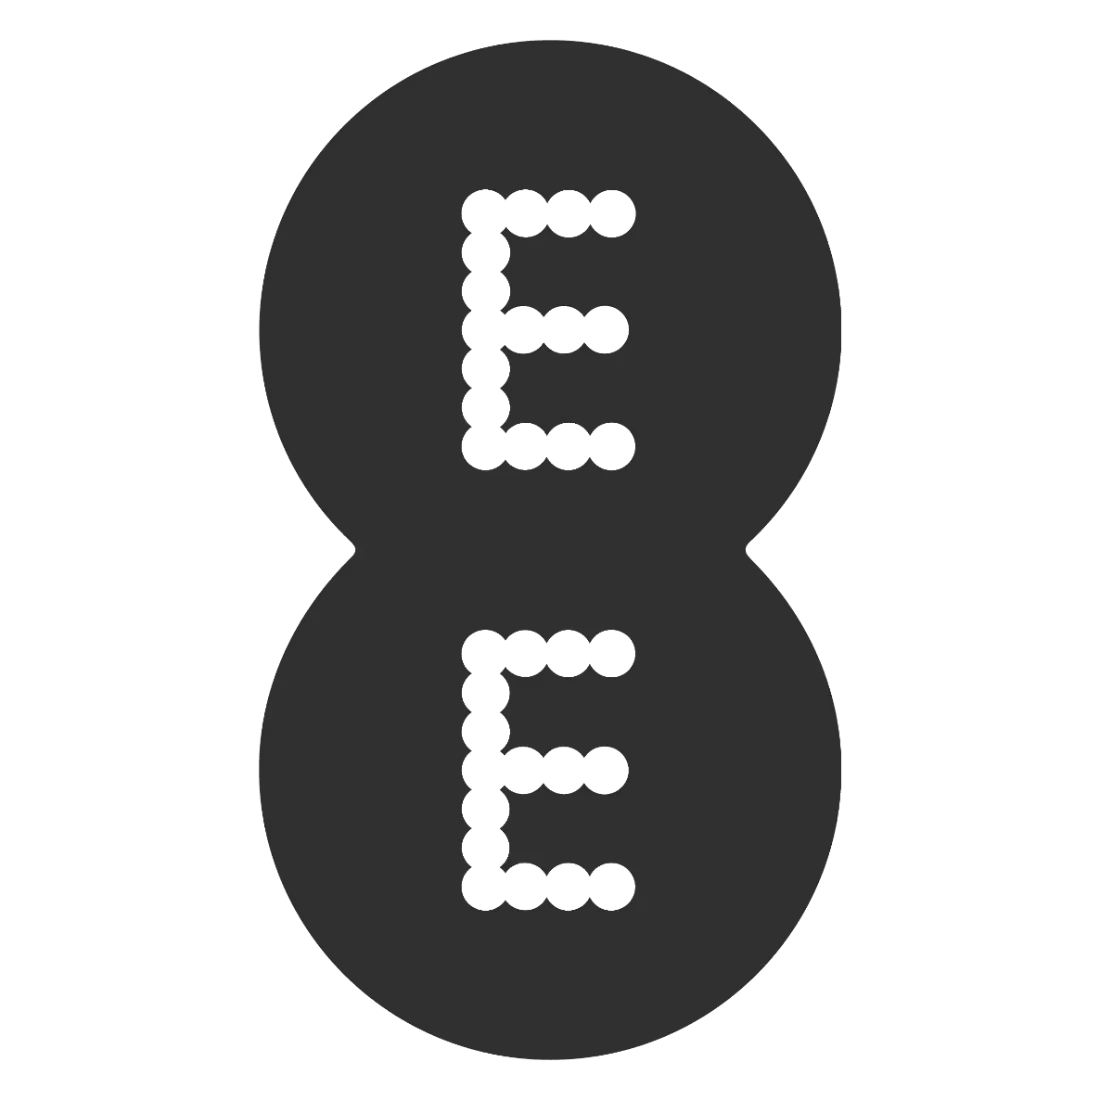 ee_logo_samgilmore